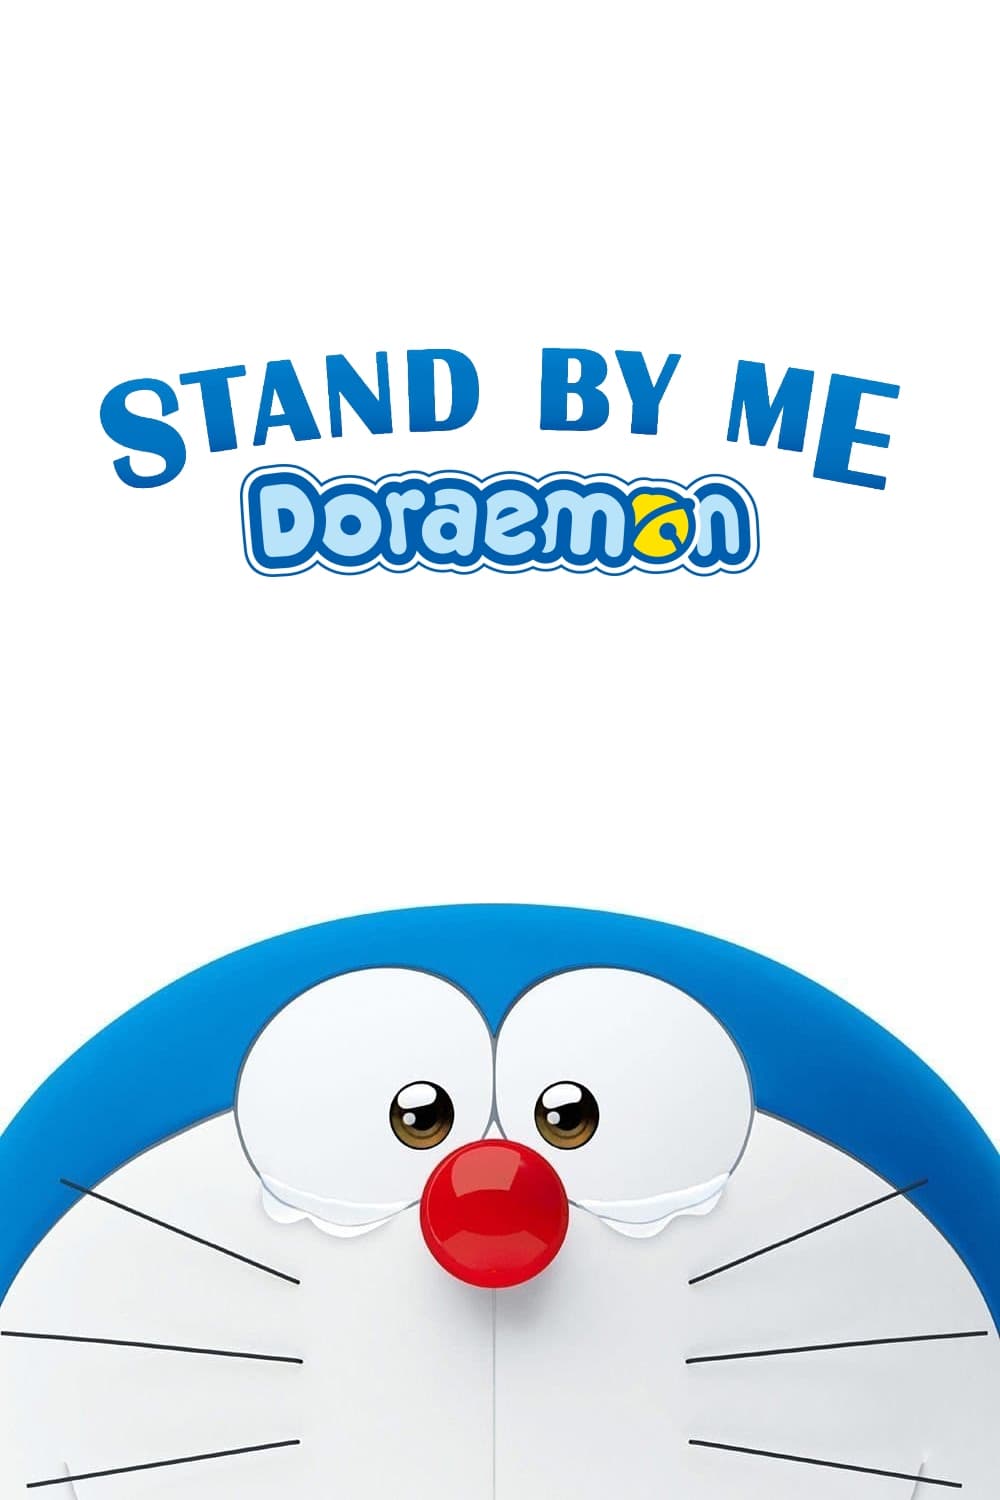 Quedate conmigo, Doraemon